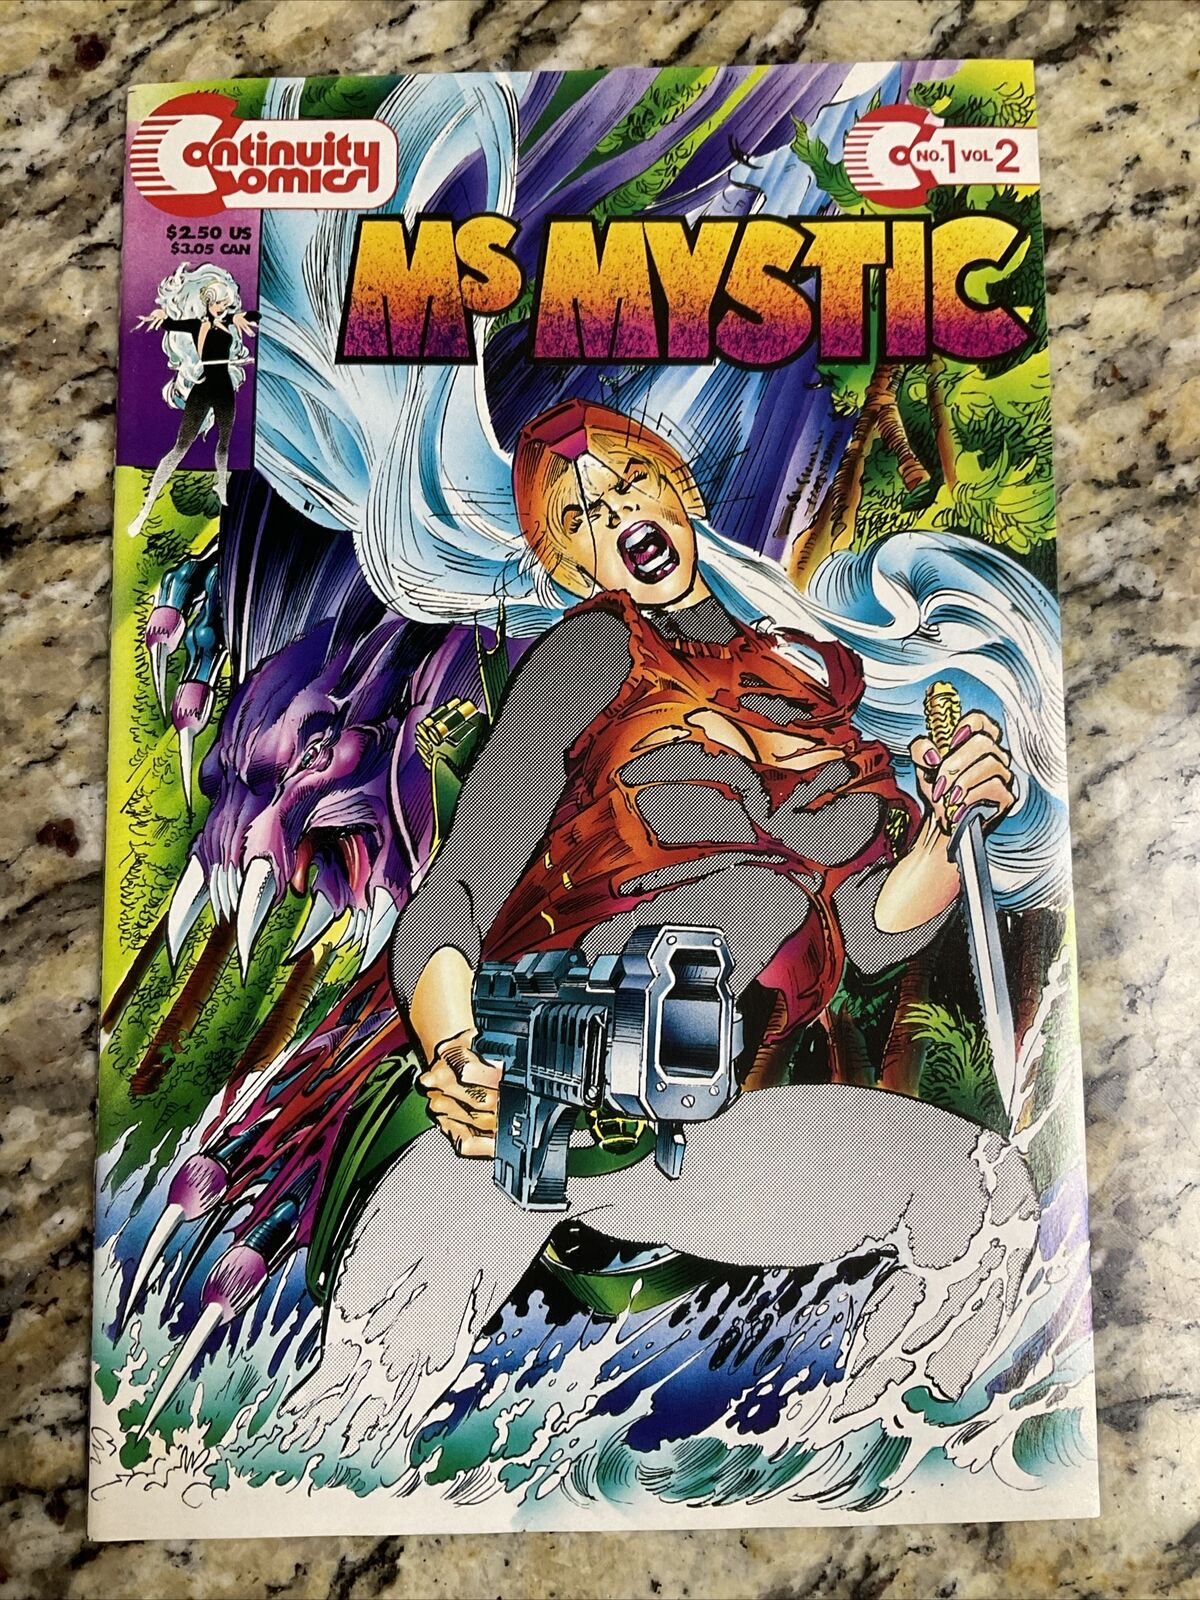 Ms Mystic #1 Vol.2 Continuity Comics VF